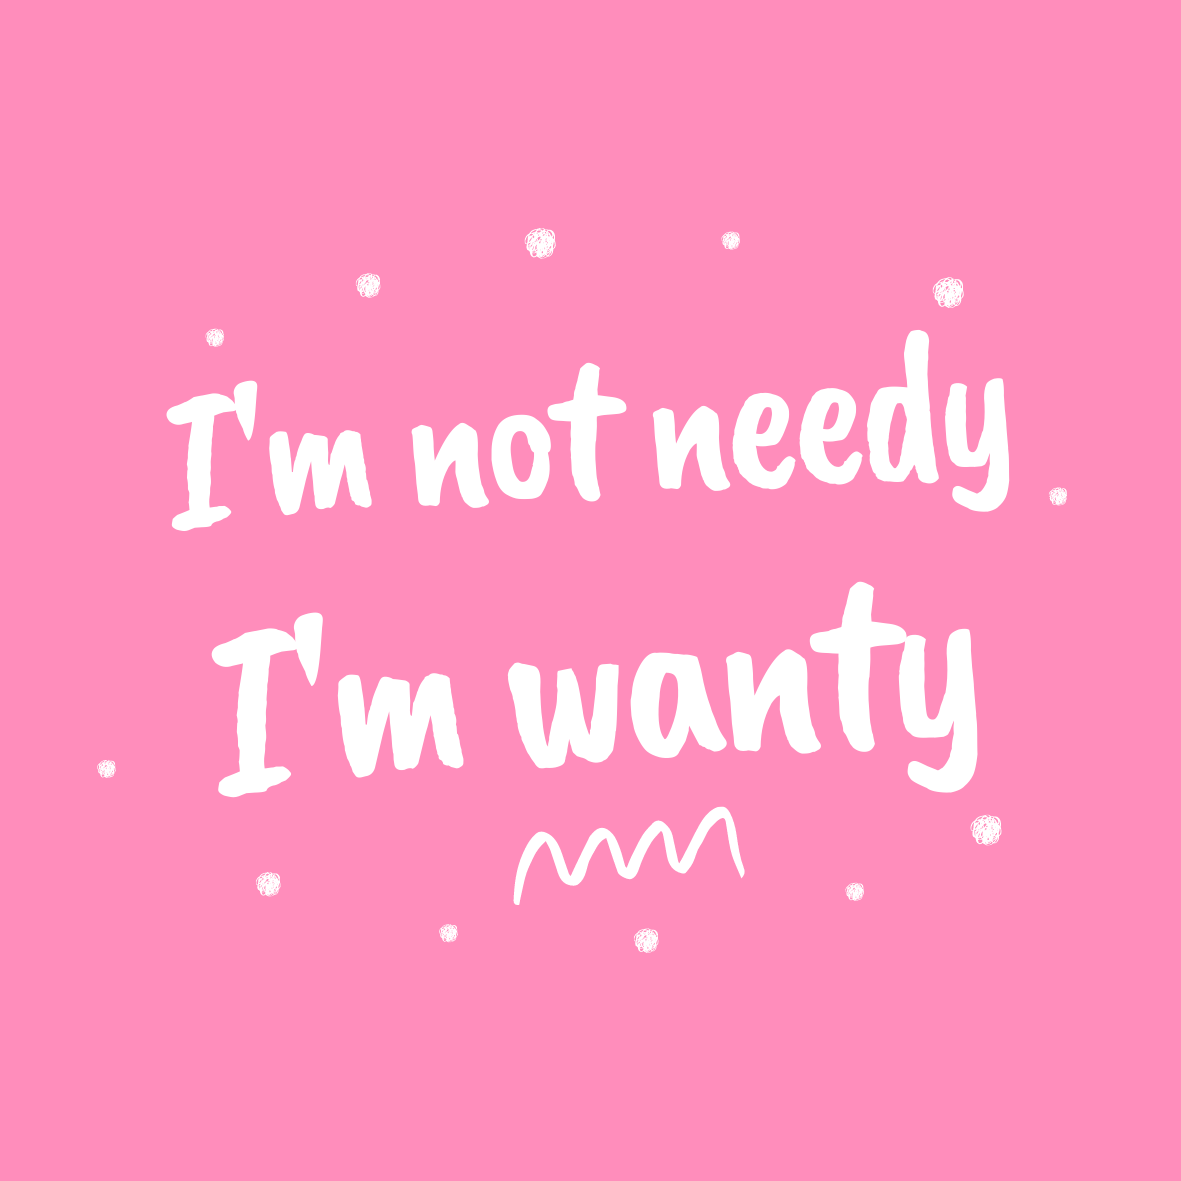 I'm not NEEDY, I'm wanty